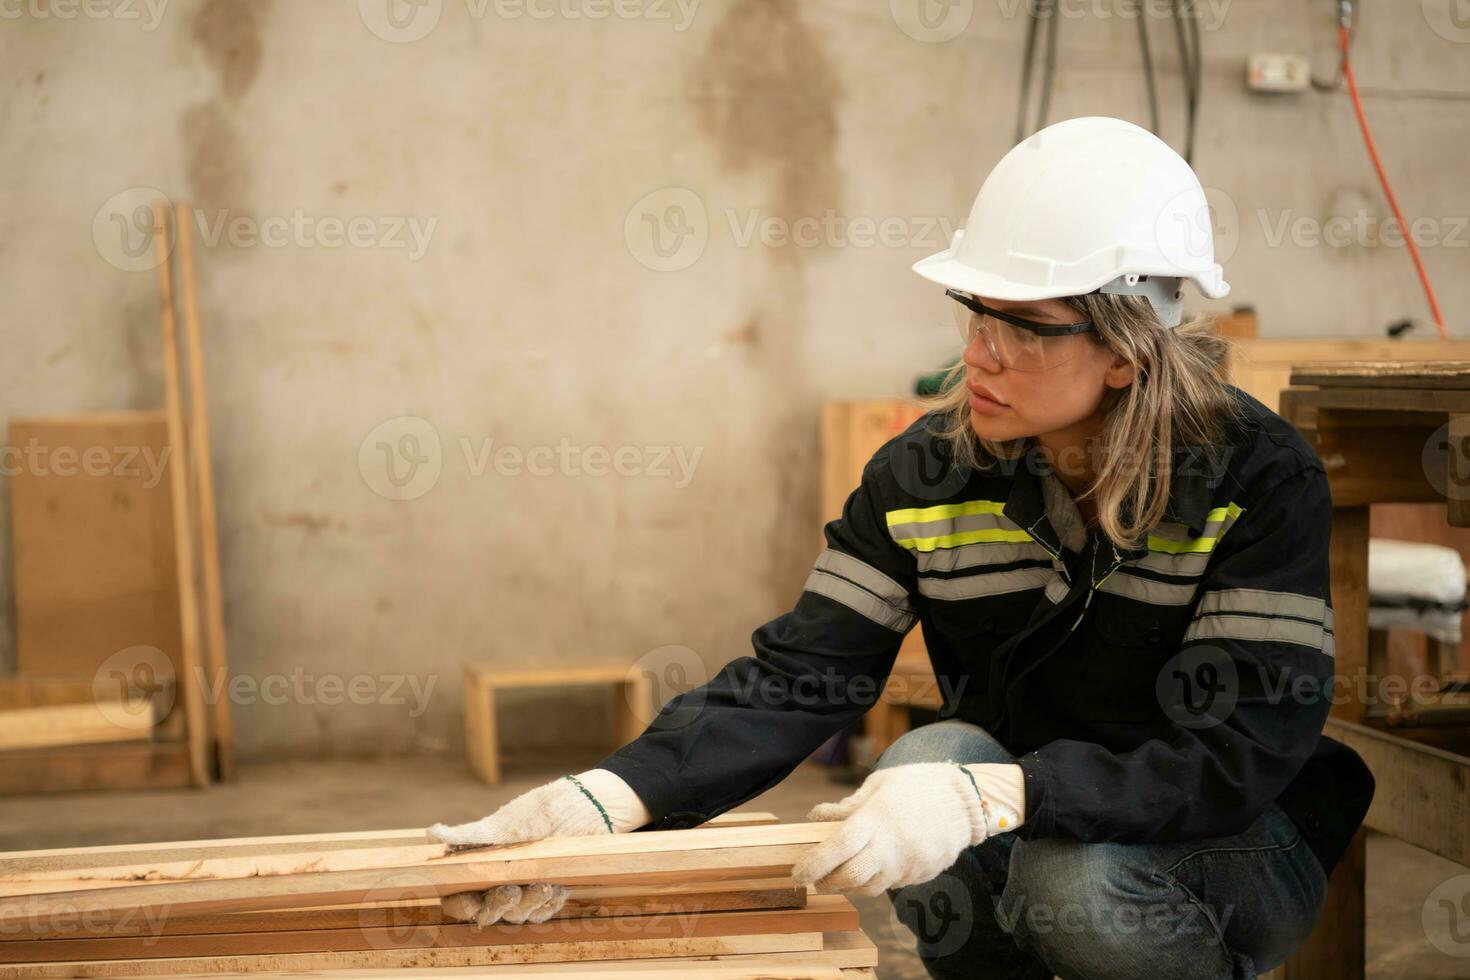 en snickare Arbetar i en snickeri verkstad. hon samlar de trä den där passerar genom de trä vinkel kvarn. foto